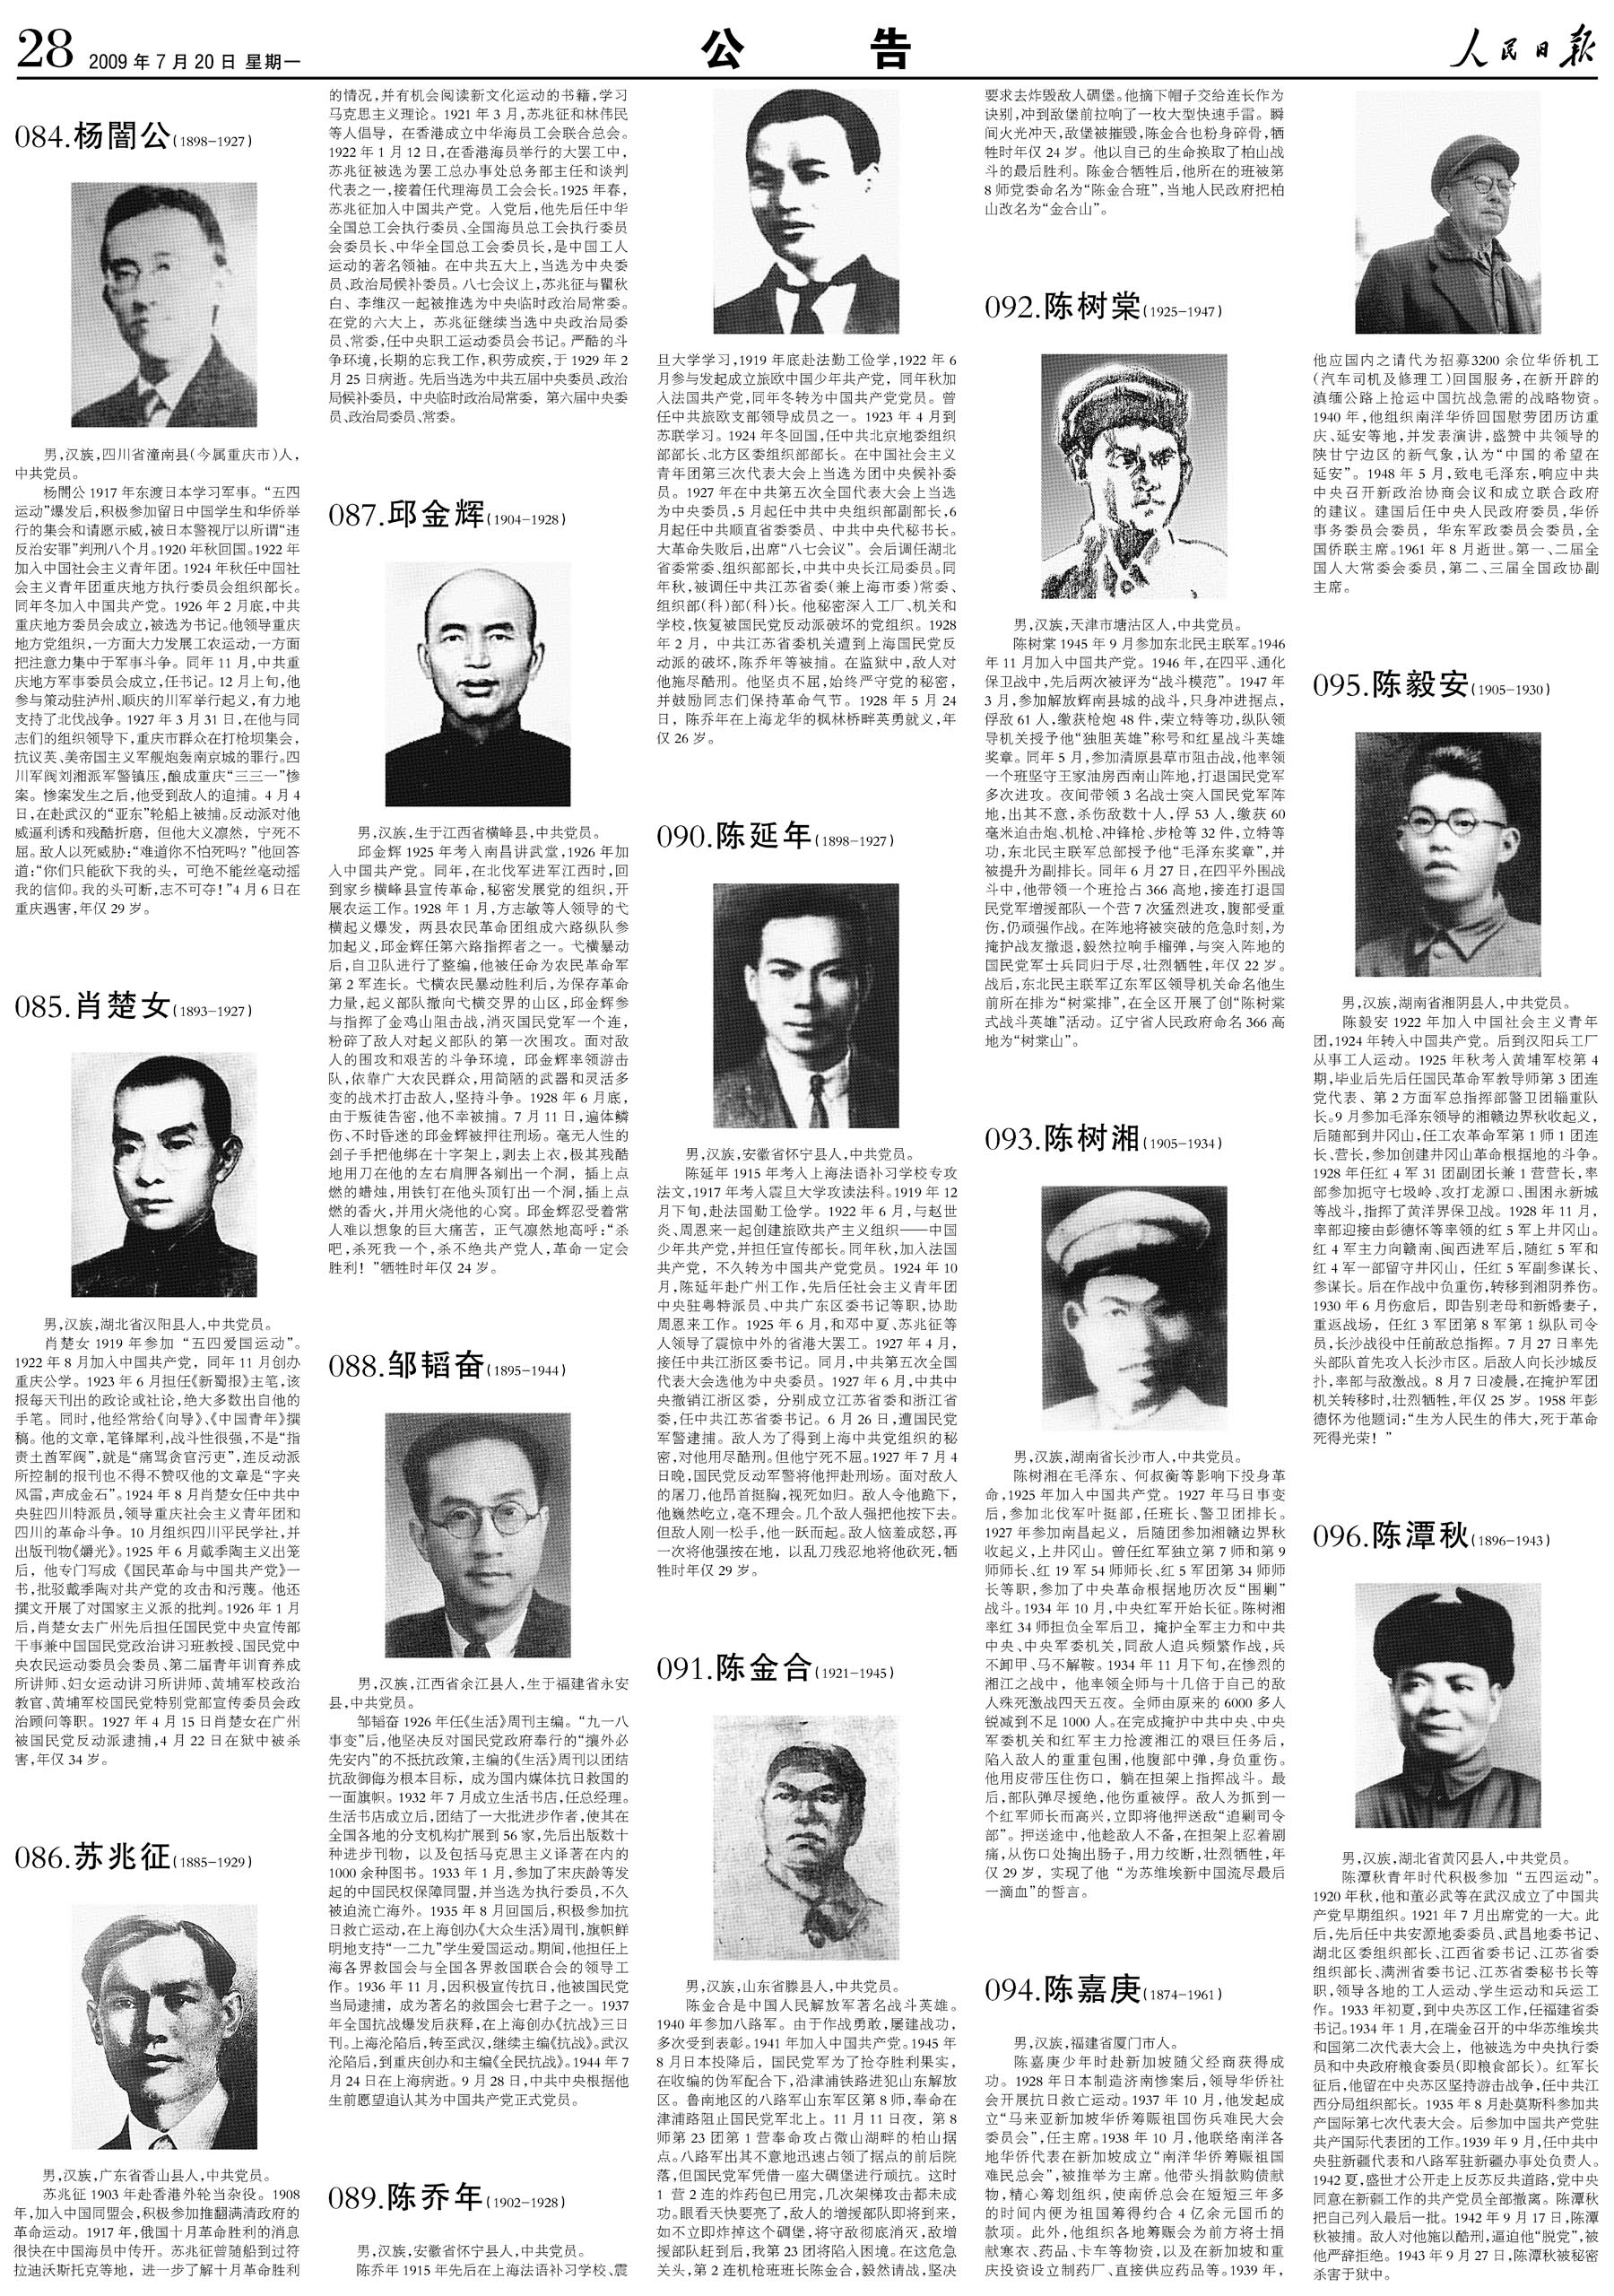 100位为新中国成立作出突出贡献的英雄模范人物和100位新中国成立以来